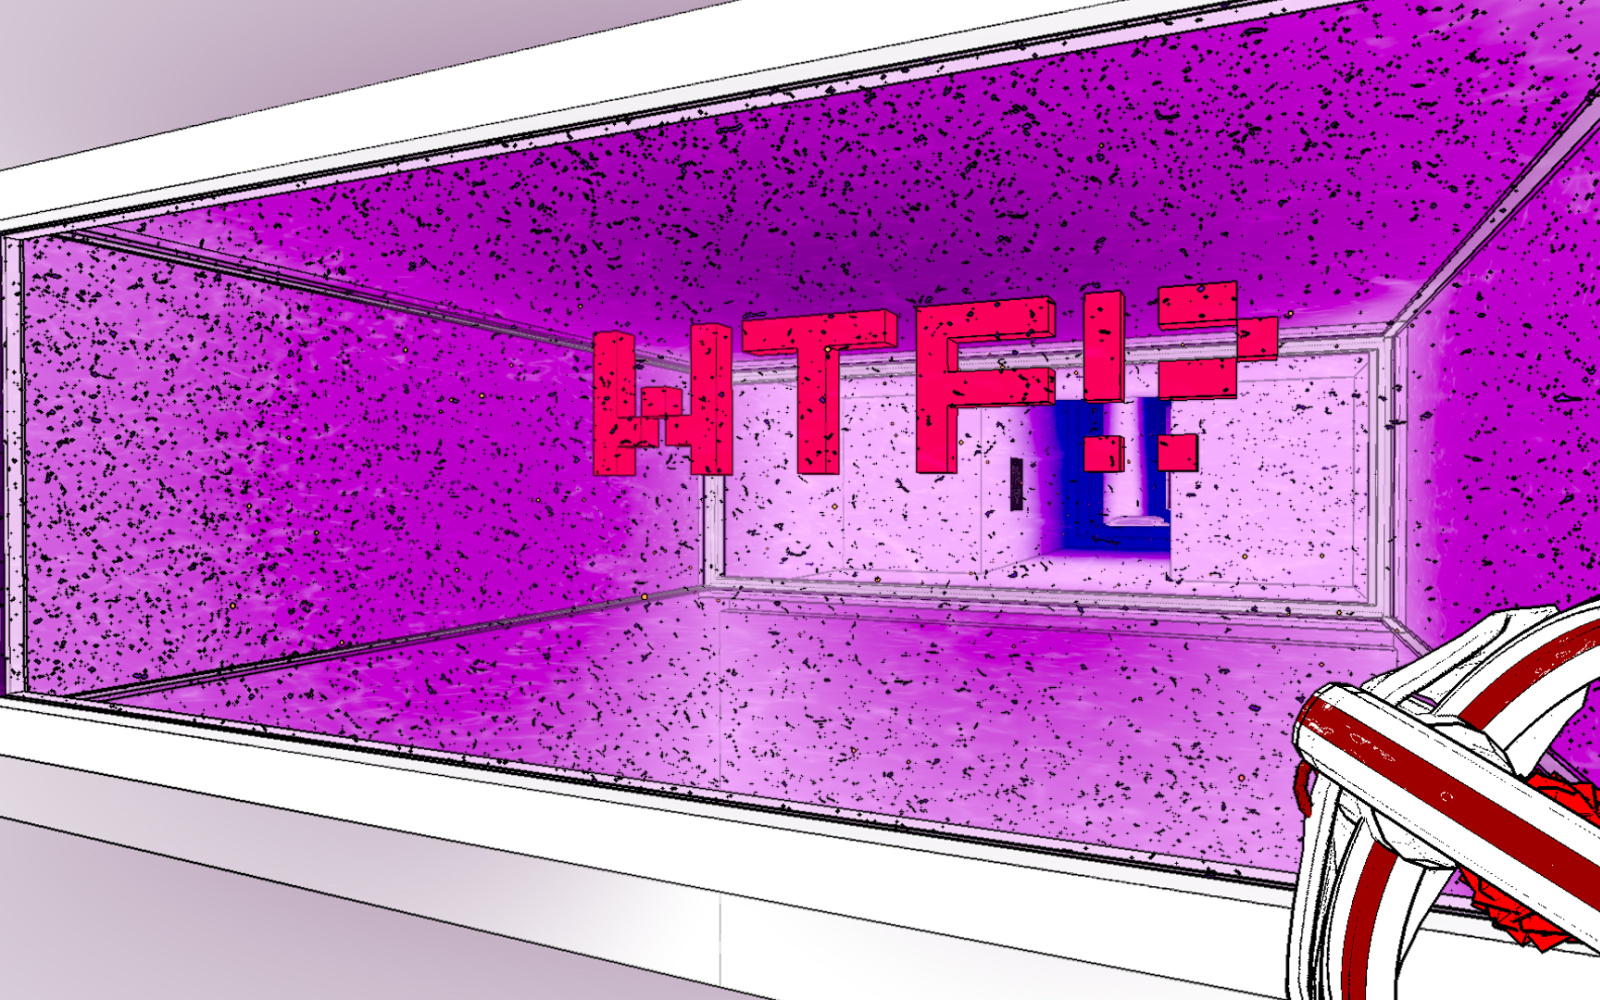 Ausschnitt aus einem Computerspiel: violettfarbener Raum, in dem in großen roten Buchstaben WTF!? geschrieben steht